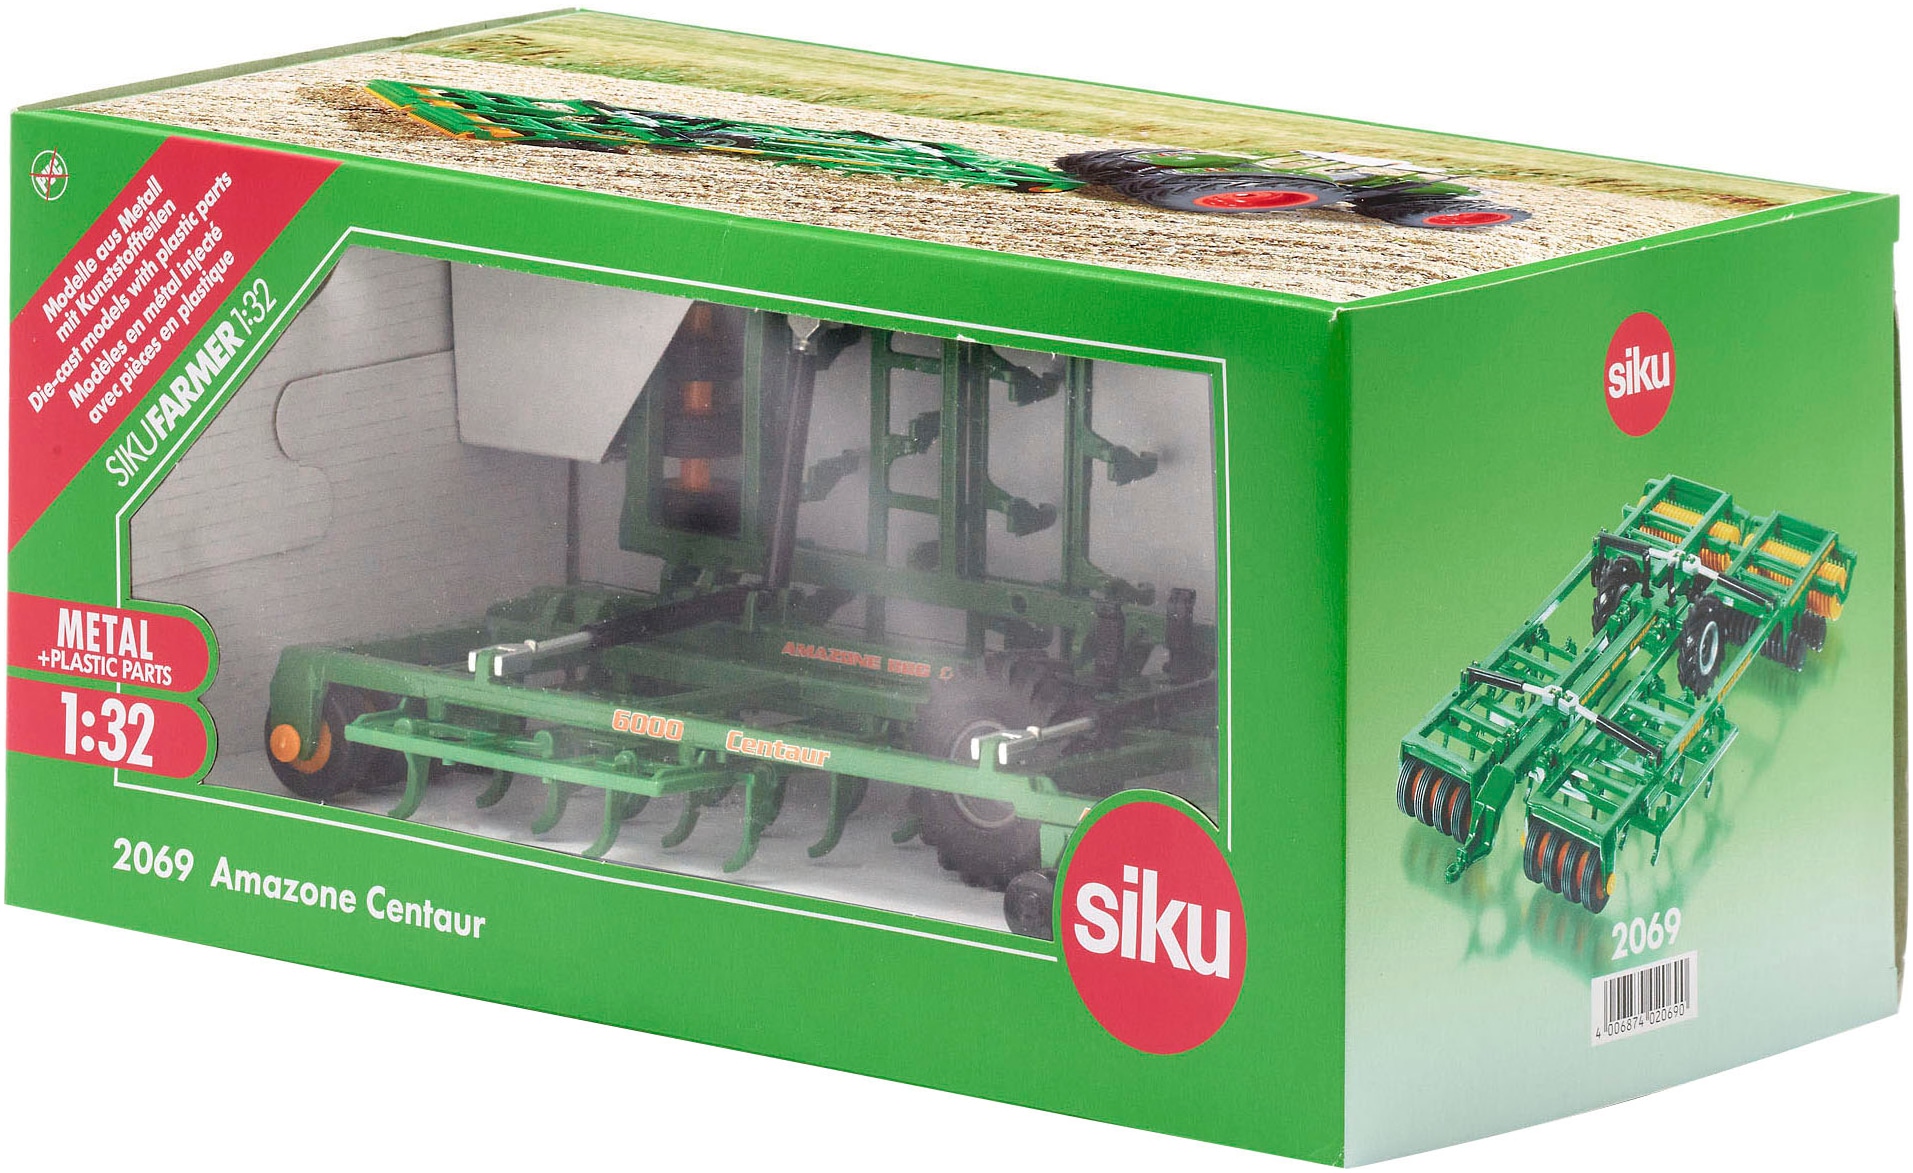 Siku Spielzeug-Landmaschine »Siku Farmer, Amazone Centaur (2069)«, Made in Europe